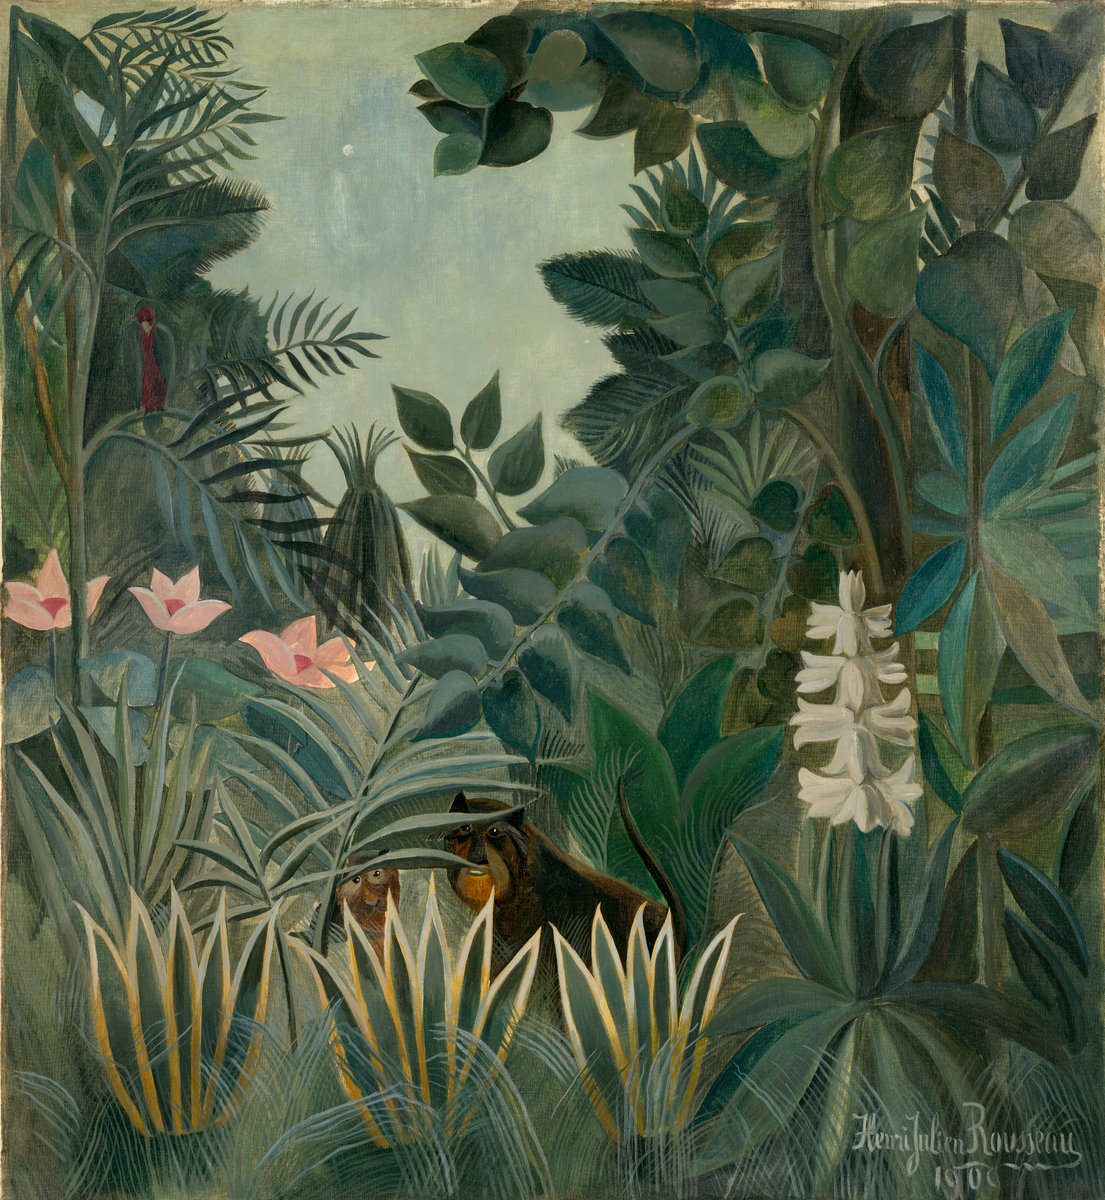 Инжир. 17 -Тропические леса, Анри Руссо, 1909. Национальная галерея искусств, Вашингтон. Честер Дейл коллекция.